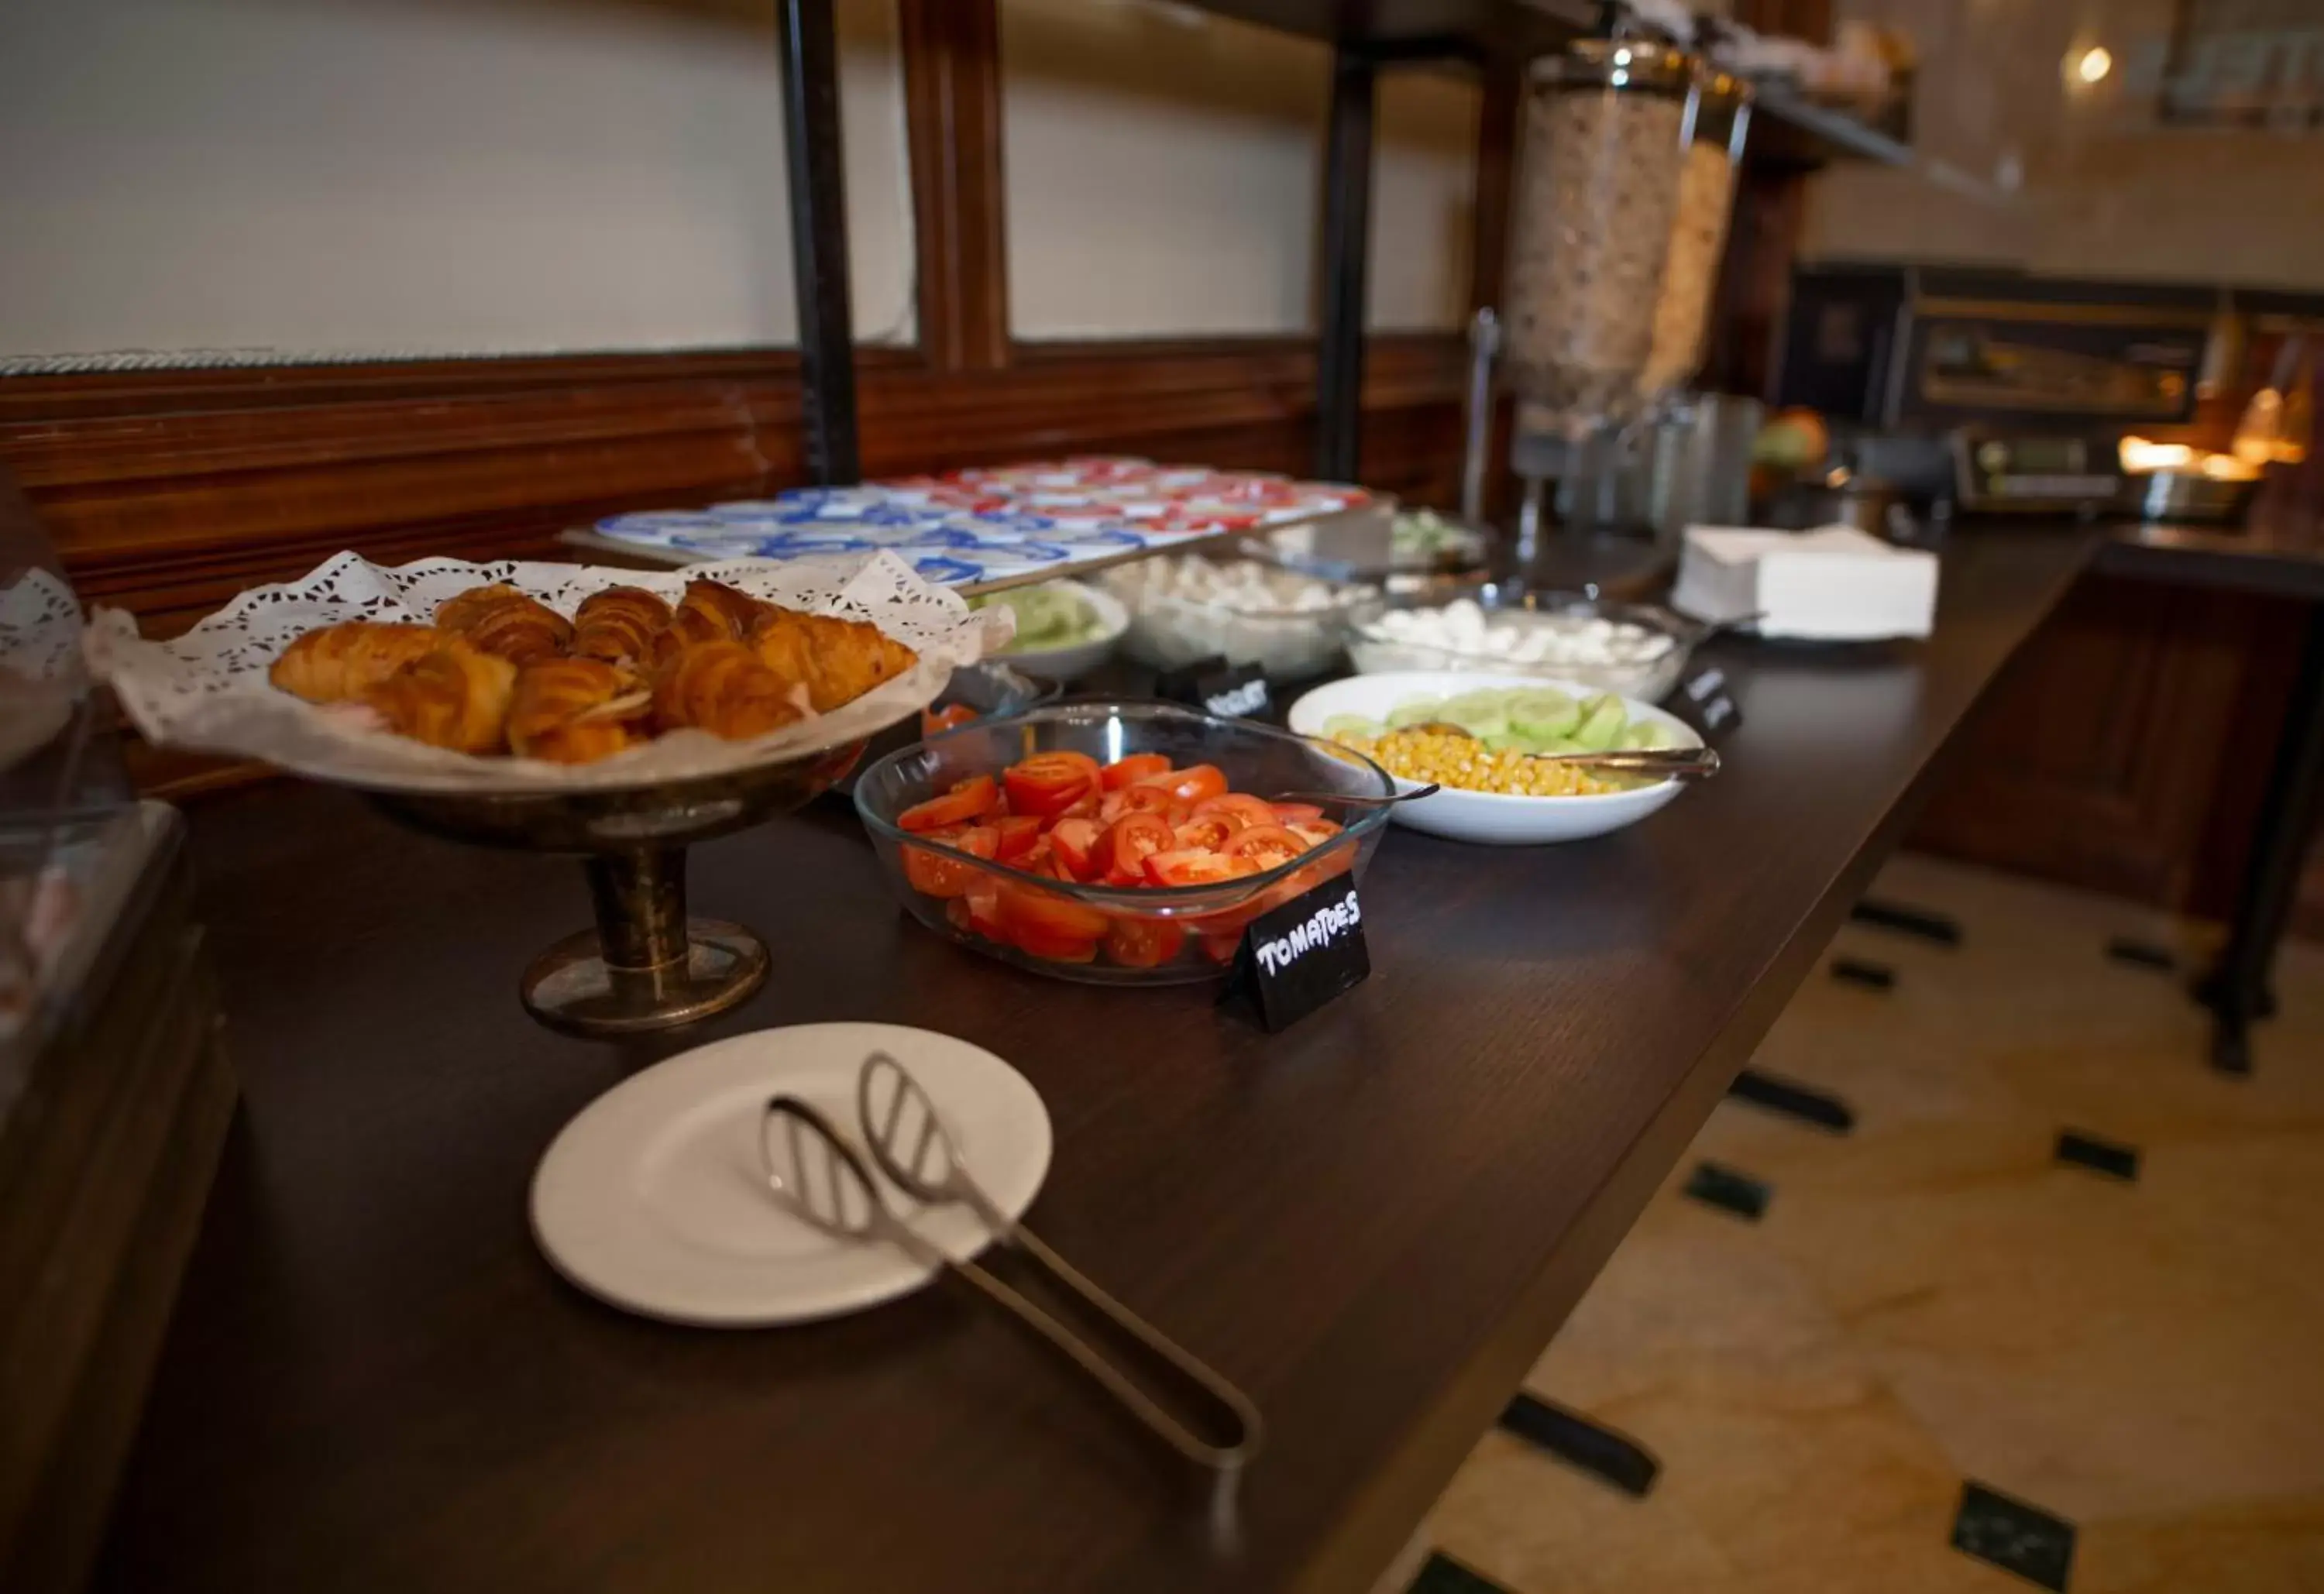 Buffet breakfast in LH Hotel Andreotti